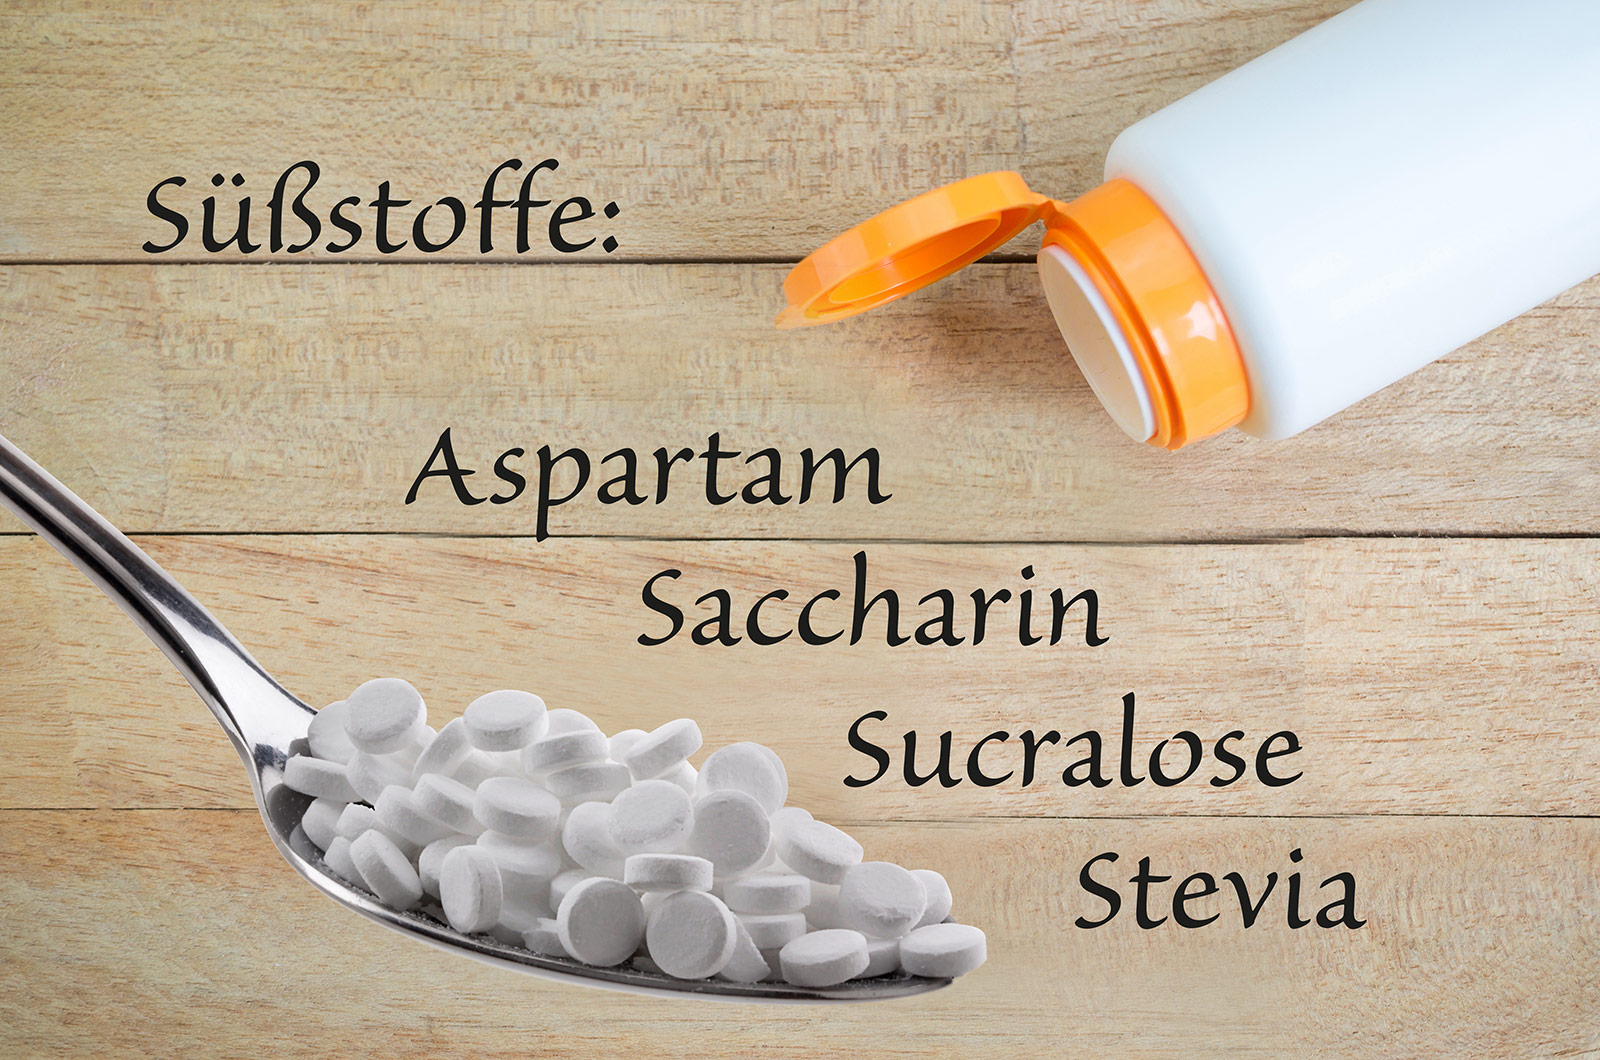 Süßstoff-Pillen auf einem Esslöffel, Pillendose auf  Holzhintergrund mit Beschriftung Süßstoffe: Aspartam, Saccharin, Sucralose und Stevia